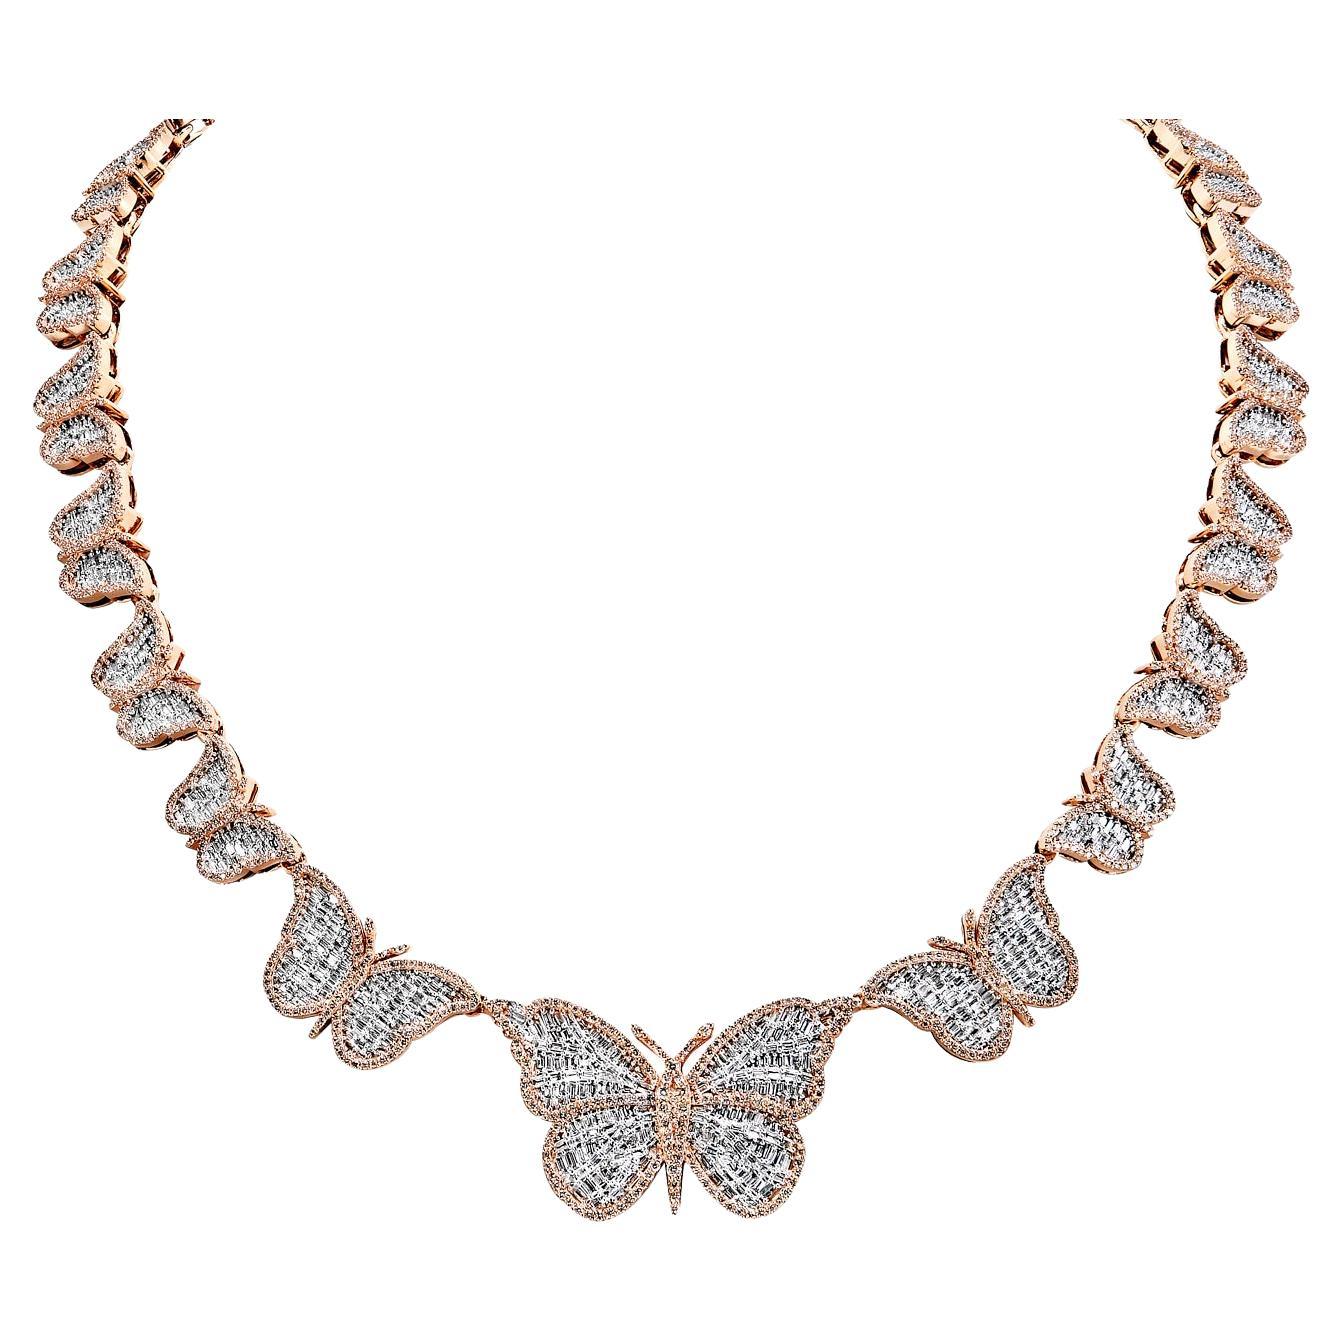 13 Carat Combine Mix Shape Diamond Necklace Certified For Sale